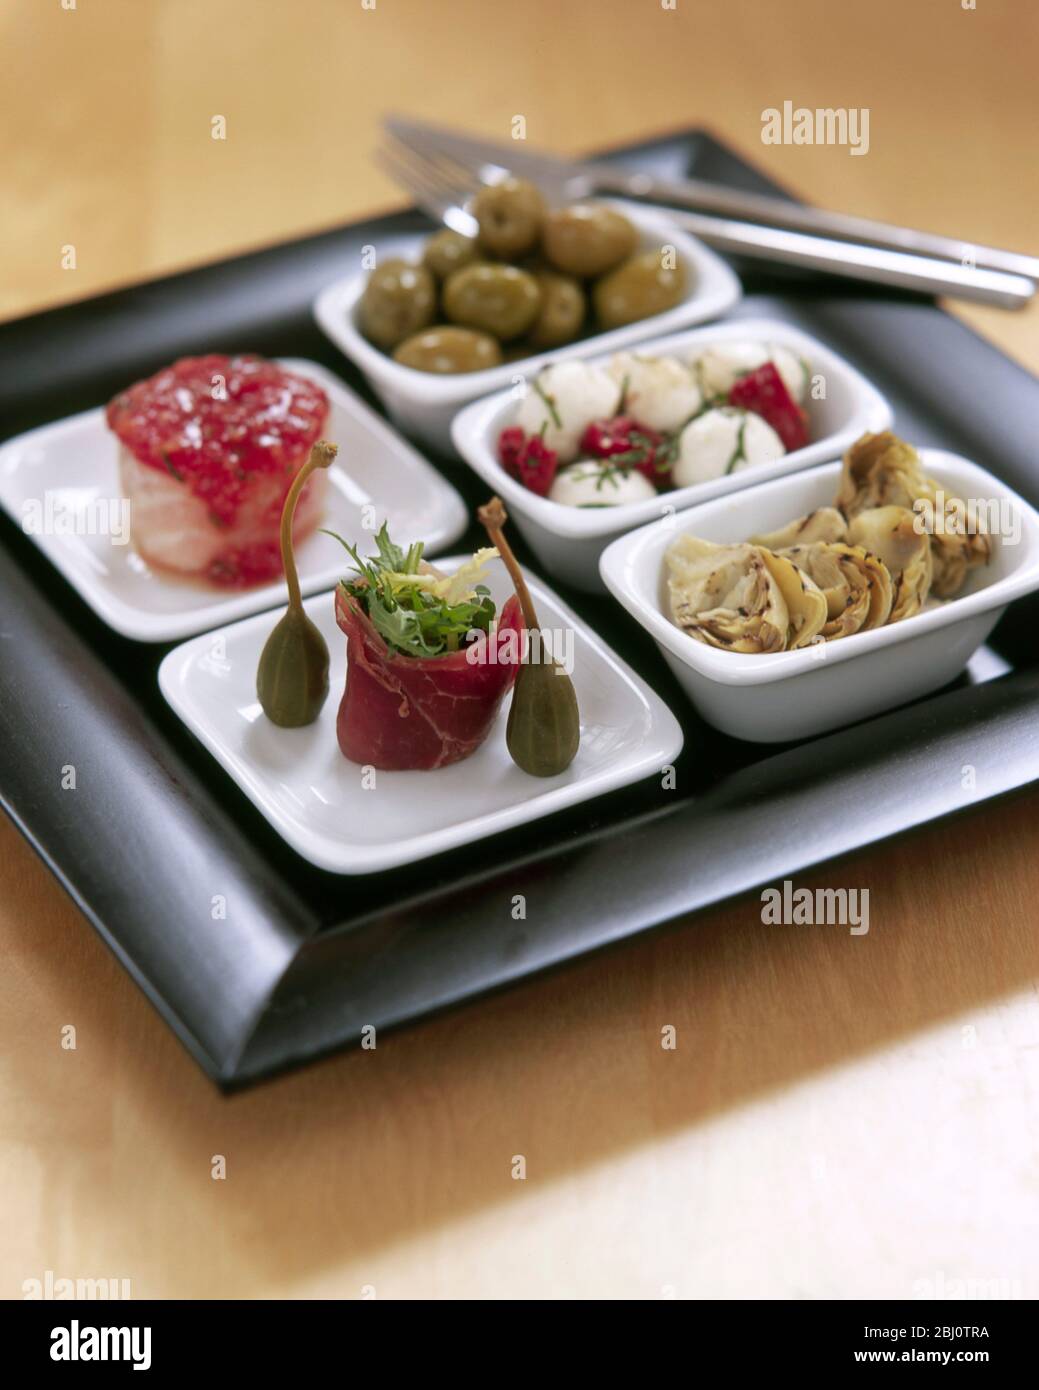 Tablett mit Tapas-Gerichten als Executive Desk Lunch - Stockfoto